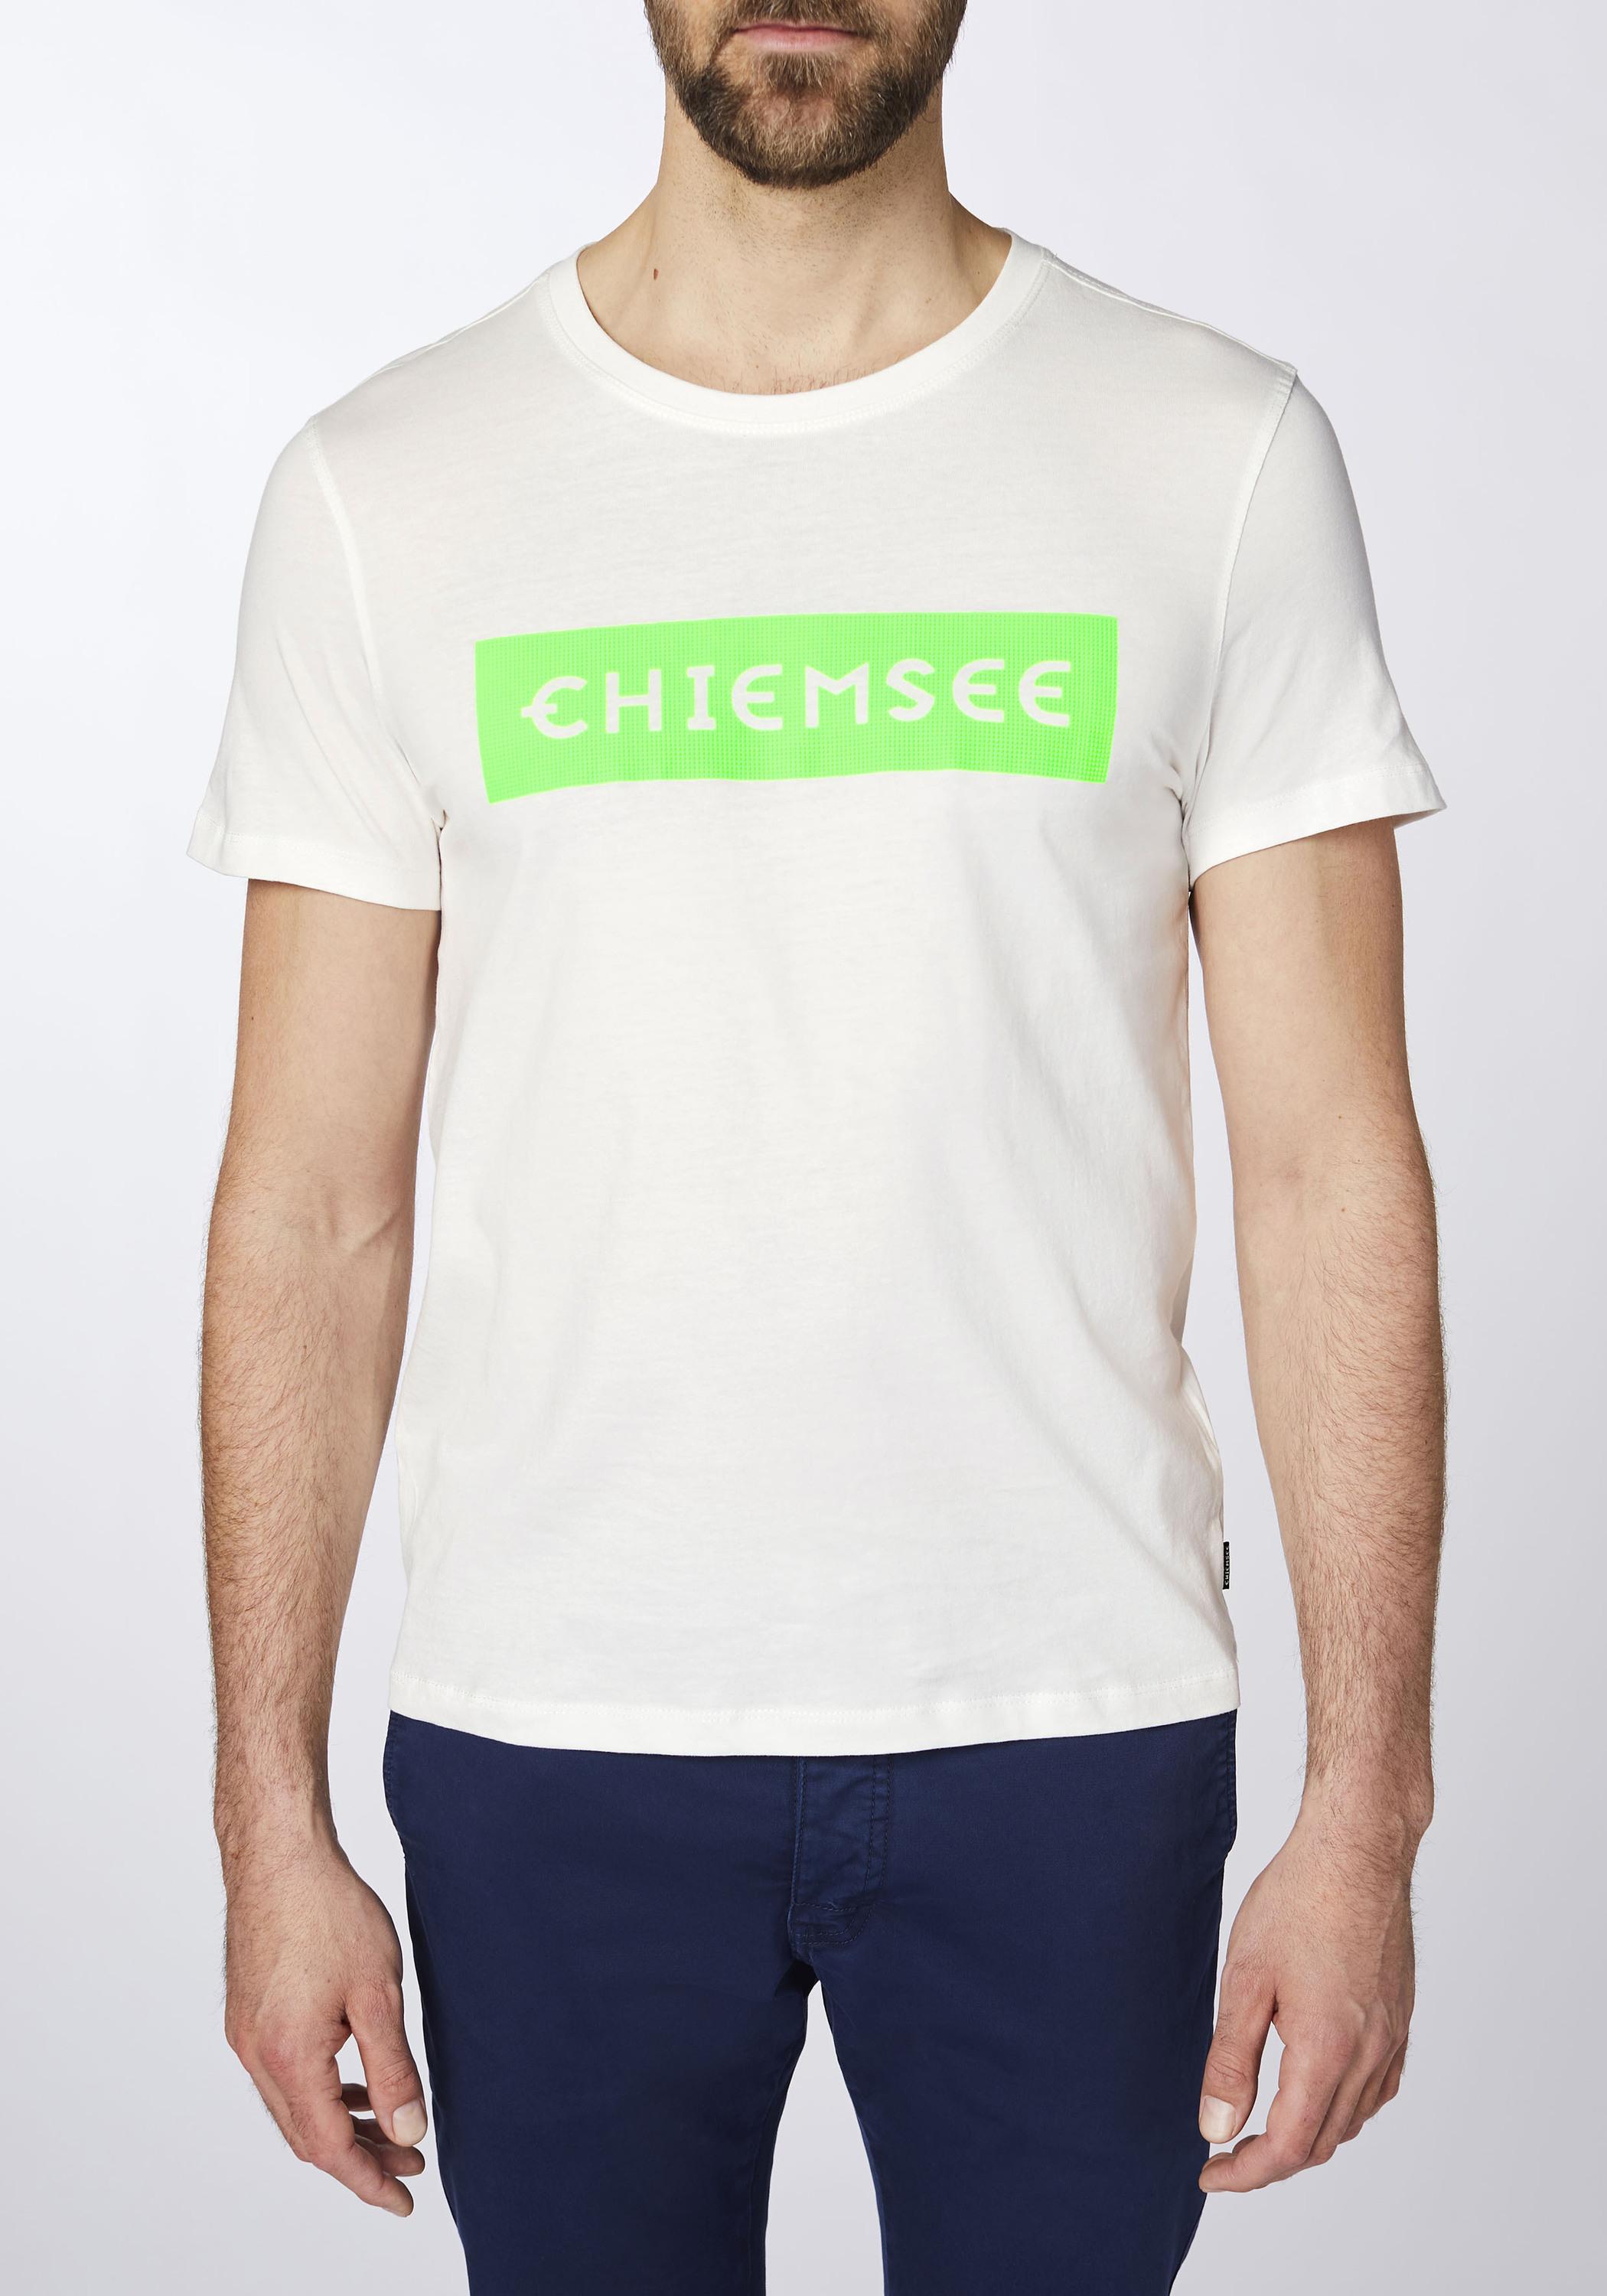 Chiemsee T-Shirt T-Shirt im Wht/Md Shop Dif Grn Herren SportScheck Online von kaufen